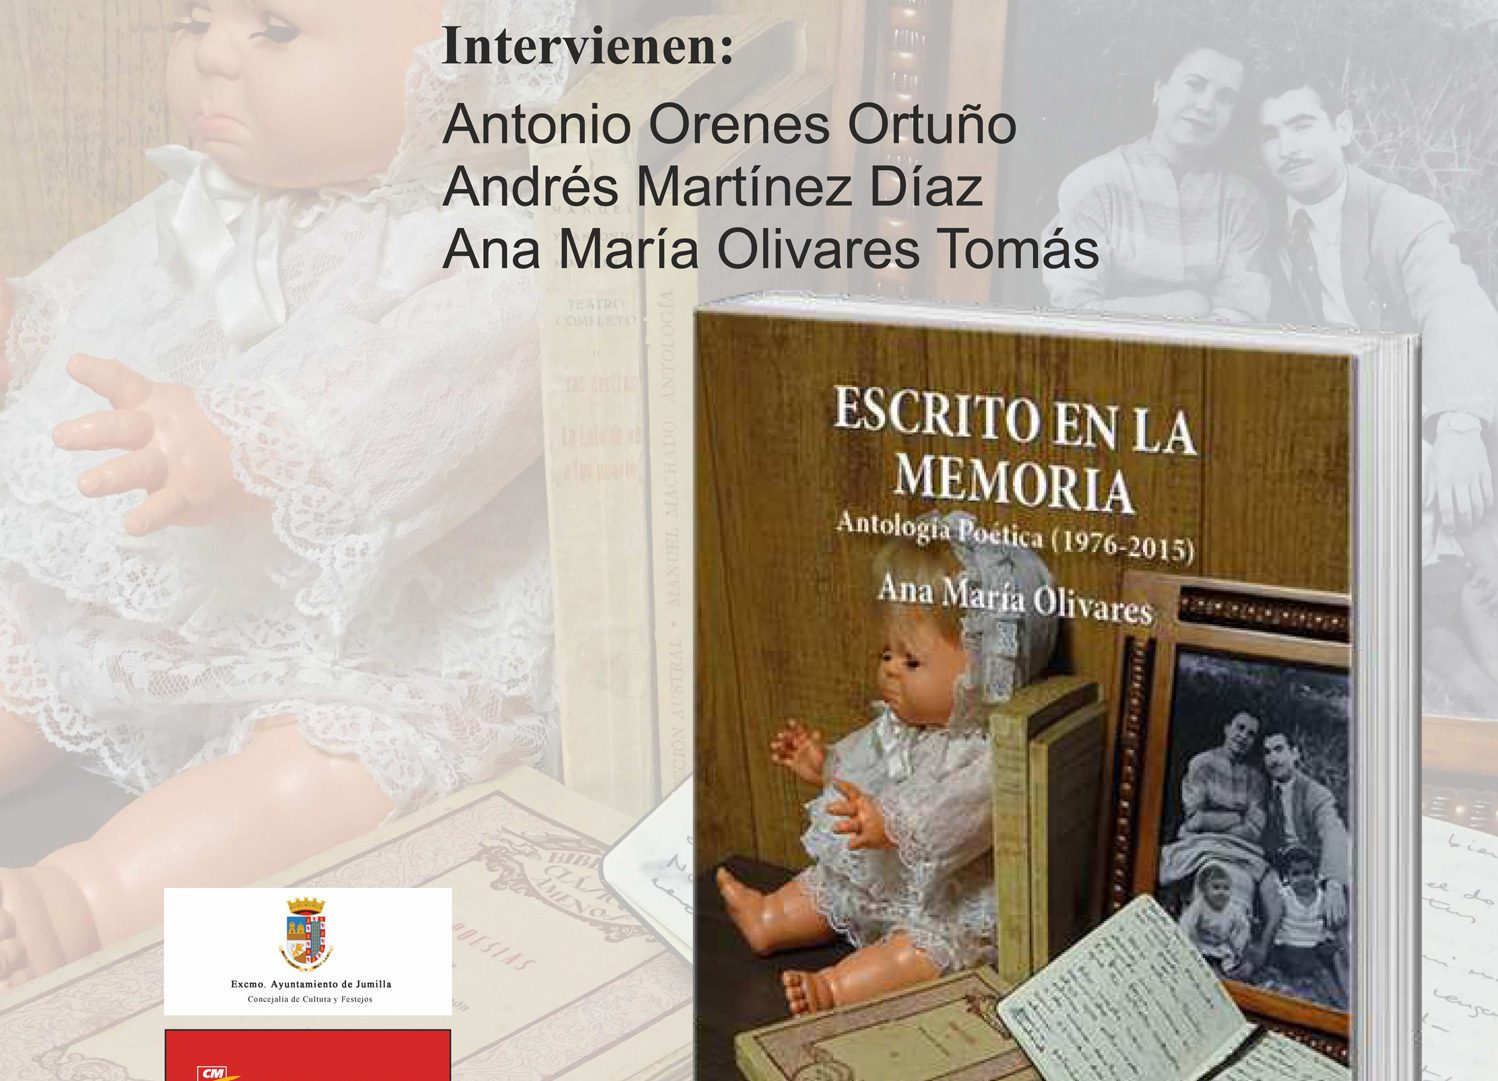 Mañana viernes se presenta ‘Escrito en la memoria’ de Ana María Olivares